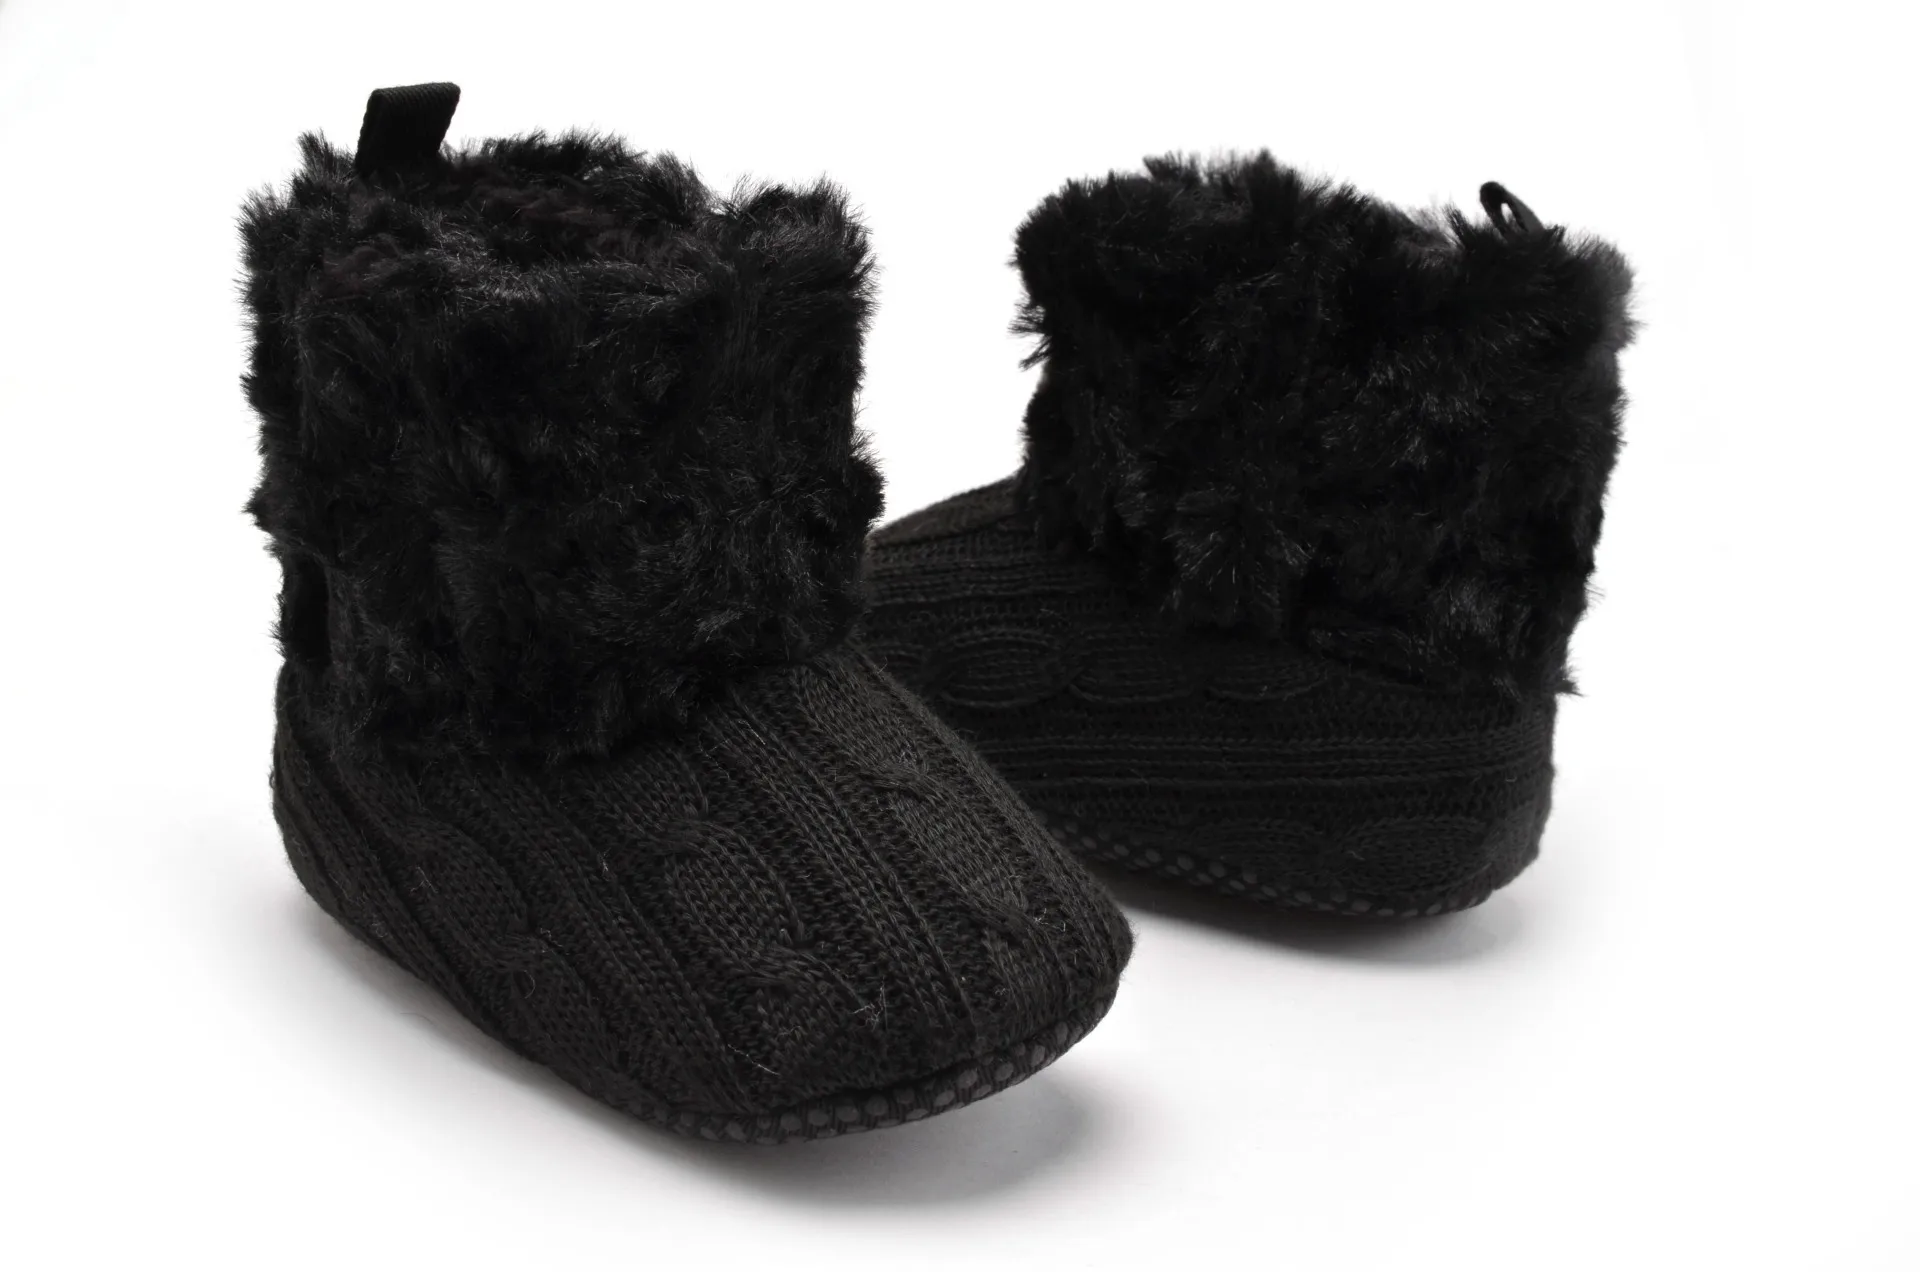 YWHUANSEN Винтаж зимние теплые новорожденная девочка малыш Prewalker утепленная одежда обувь сапоги и ботинки для девочек младенческой малыша